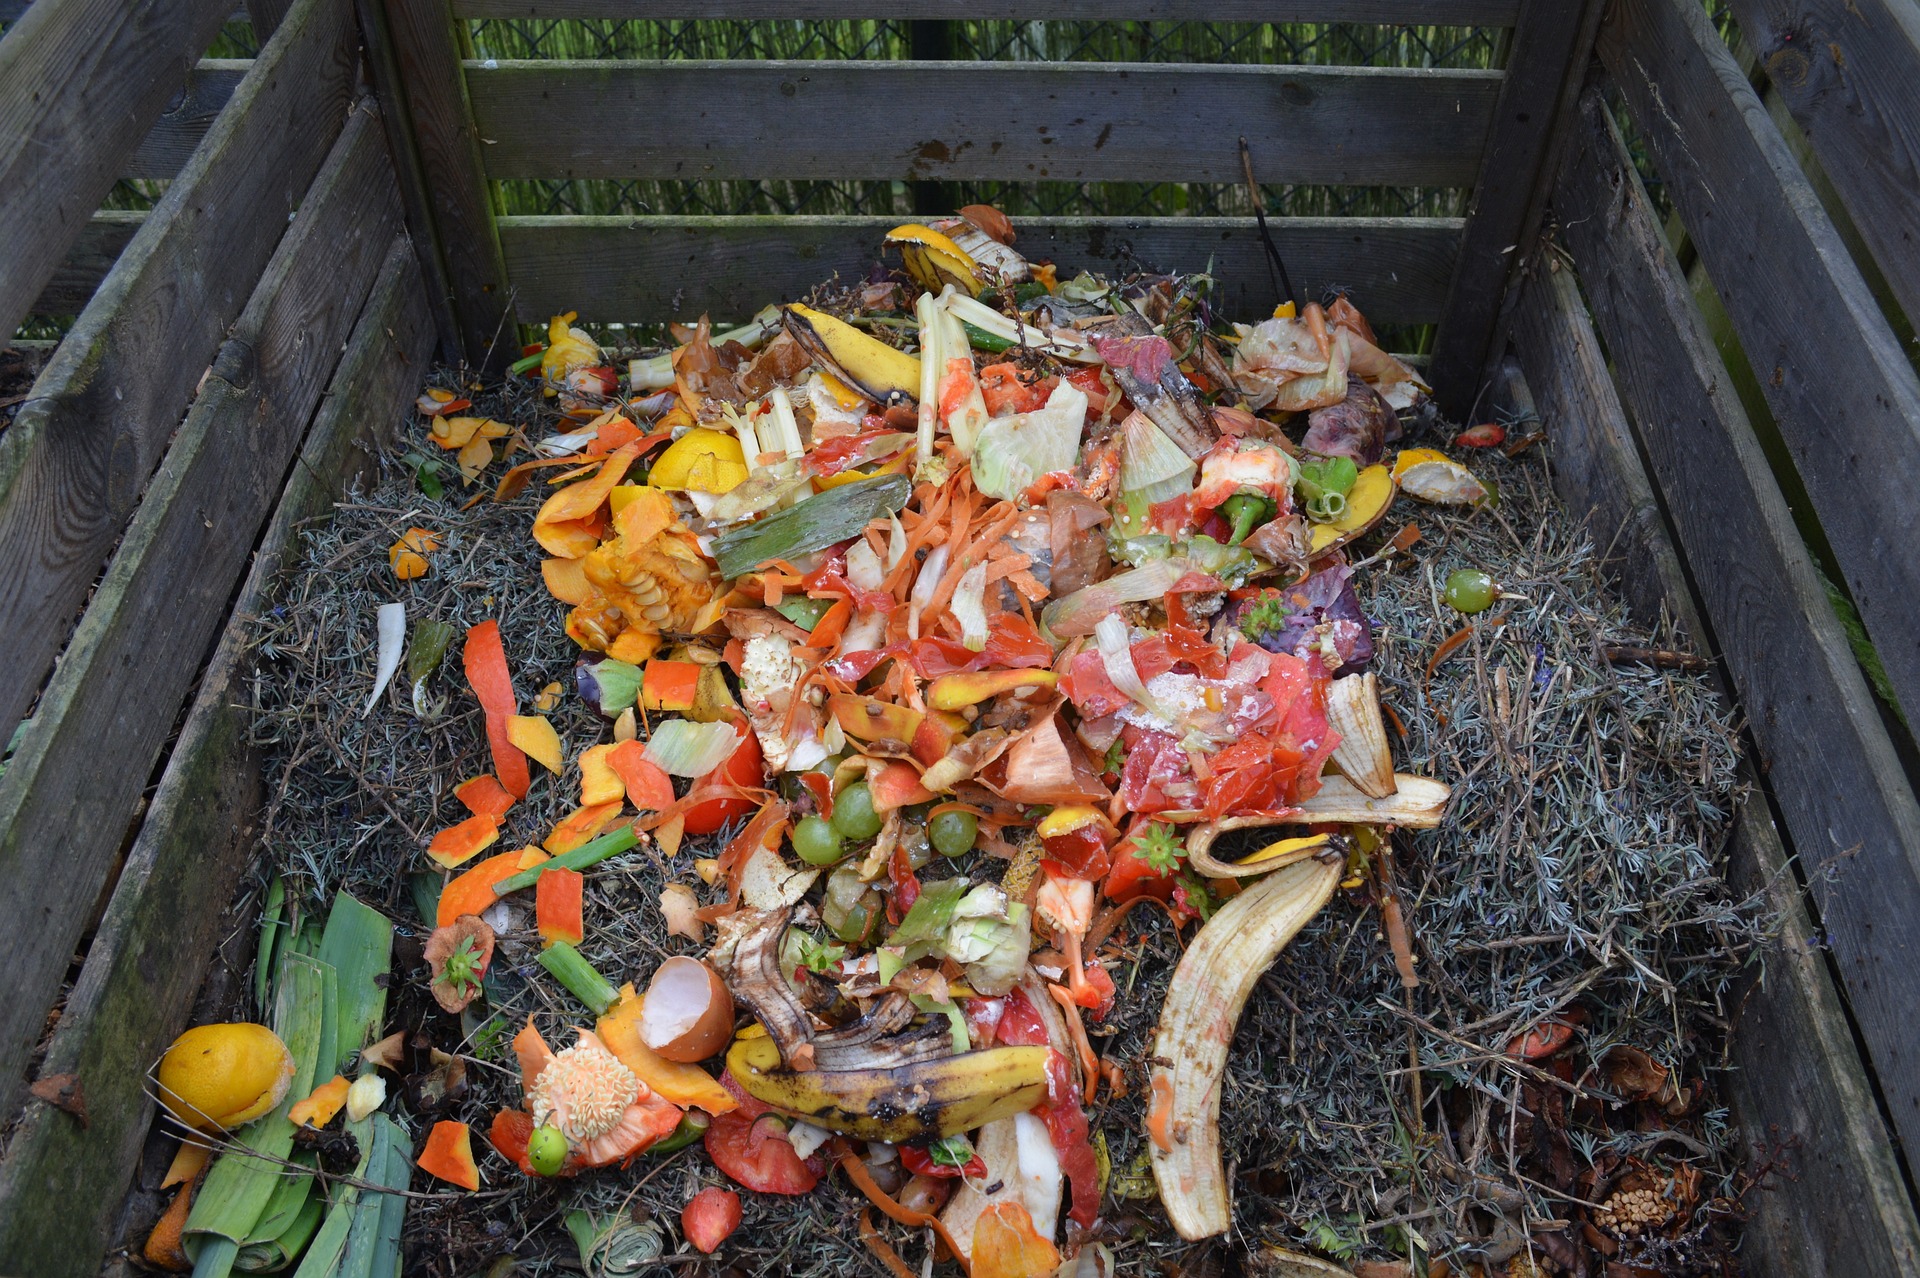 Jak założyć kompost w ogrodzie i co tam wrzucać?